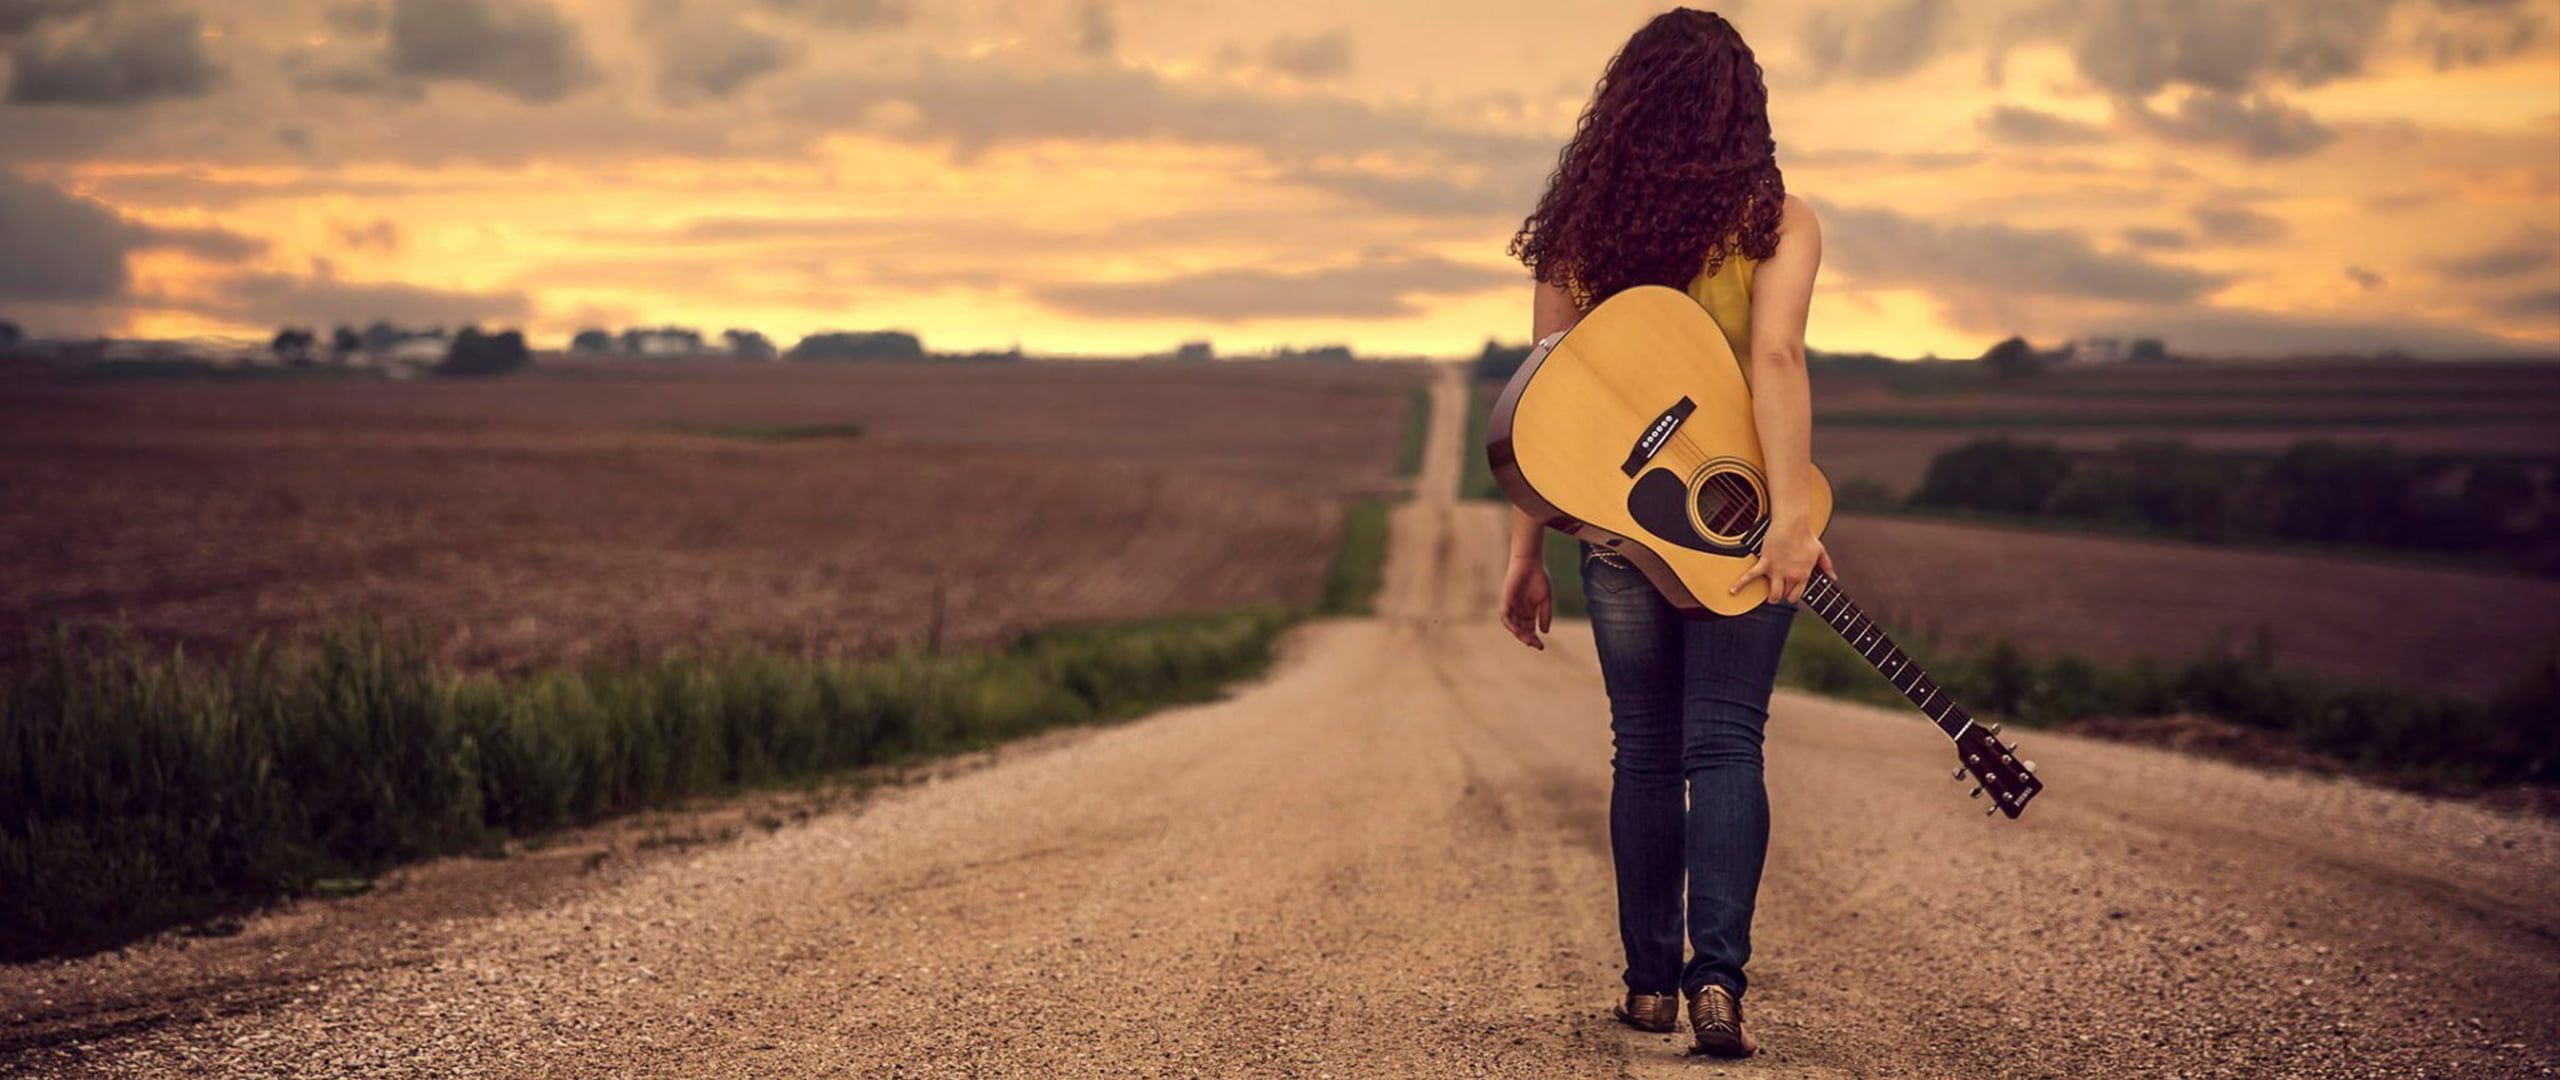 Исполняя мечты песня. Девушка на дороге. Девушка с гитарой. Гитара на спине. Девушка с гитарой идет.